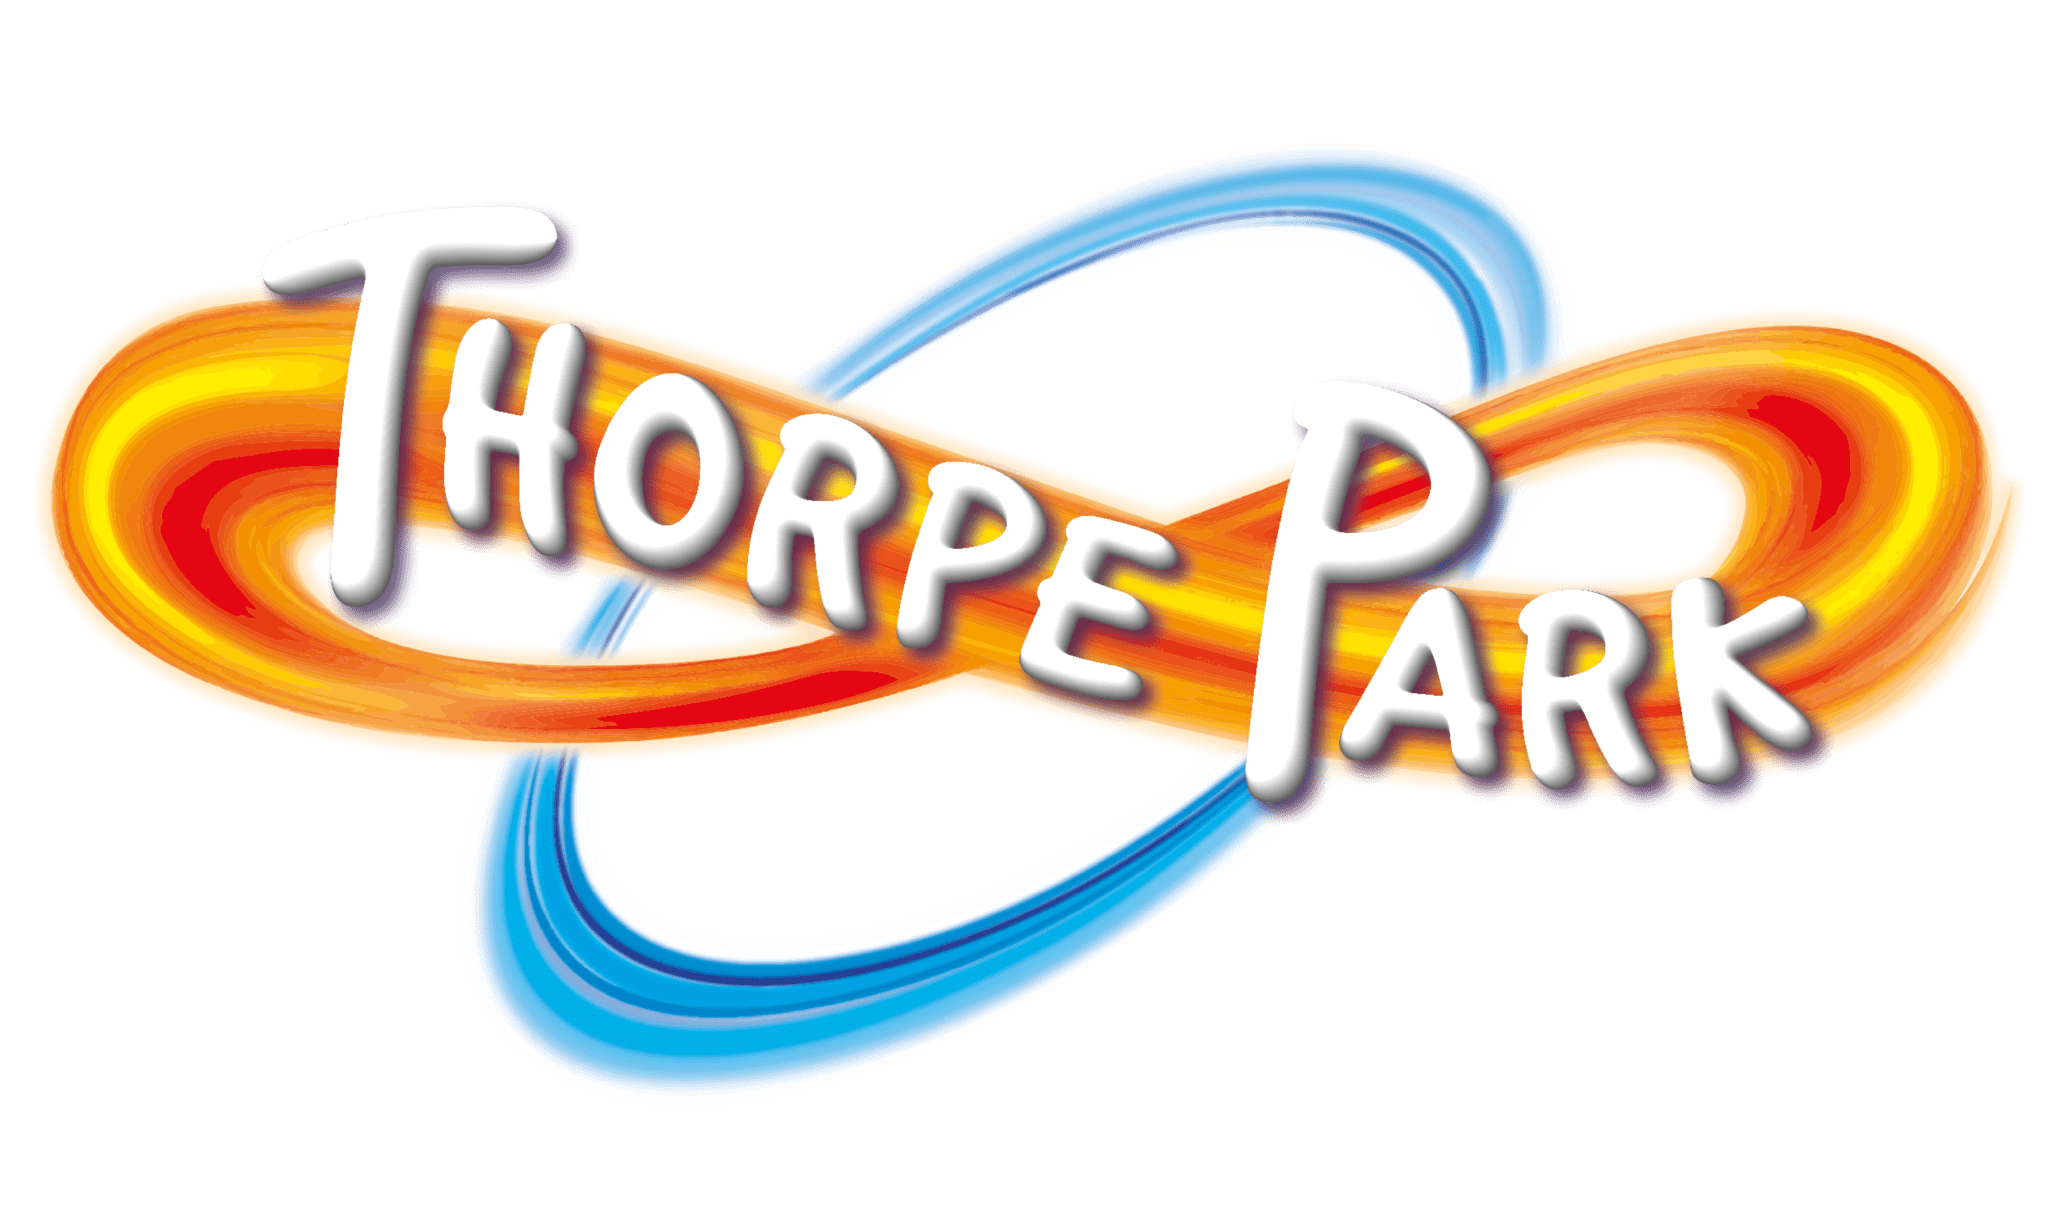 Thorpe Park logo